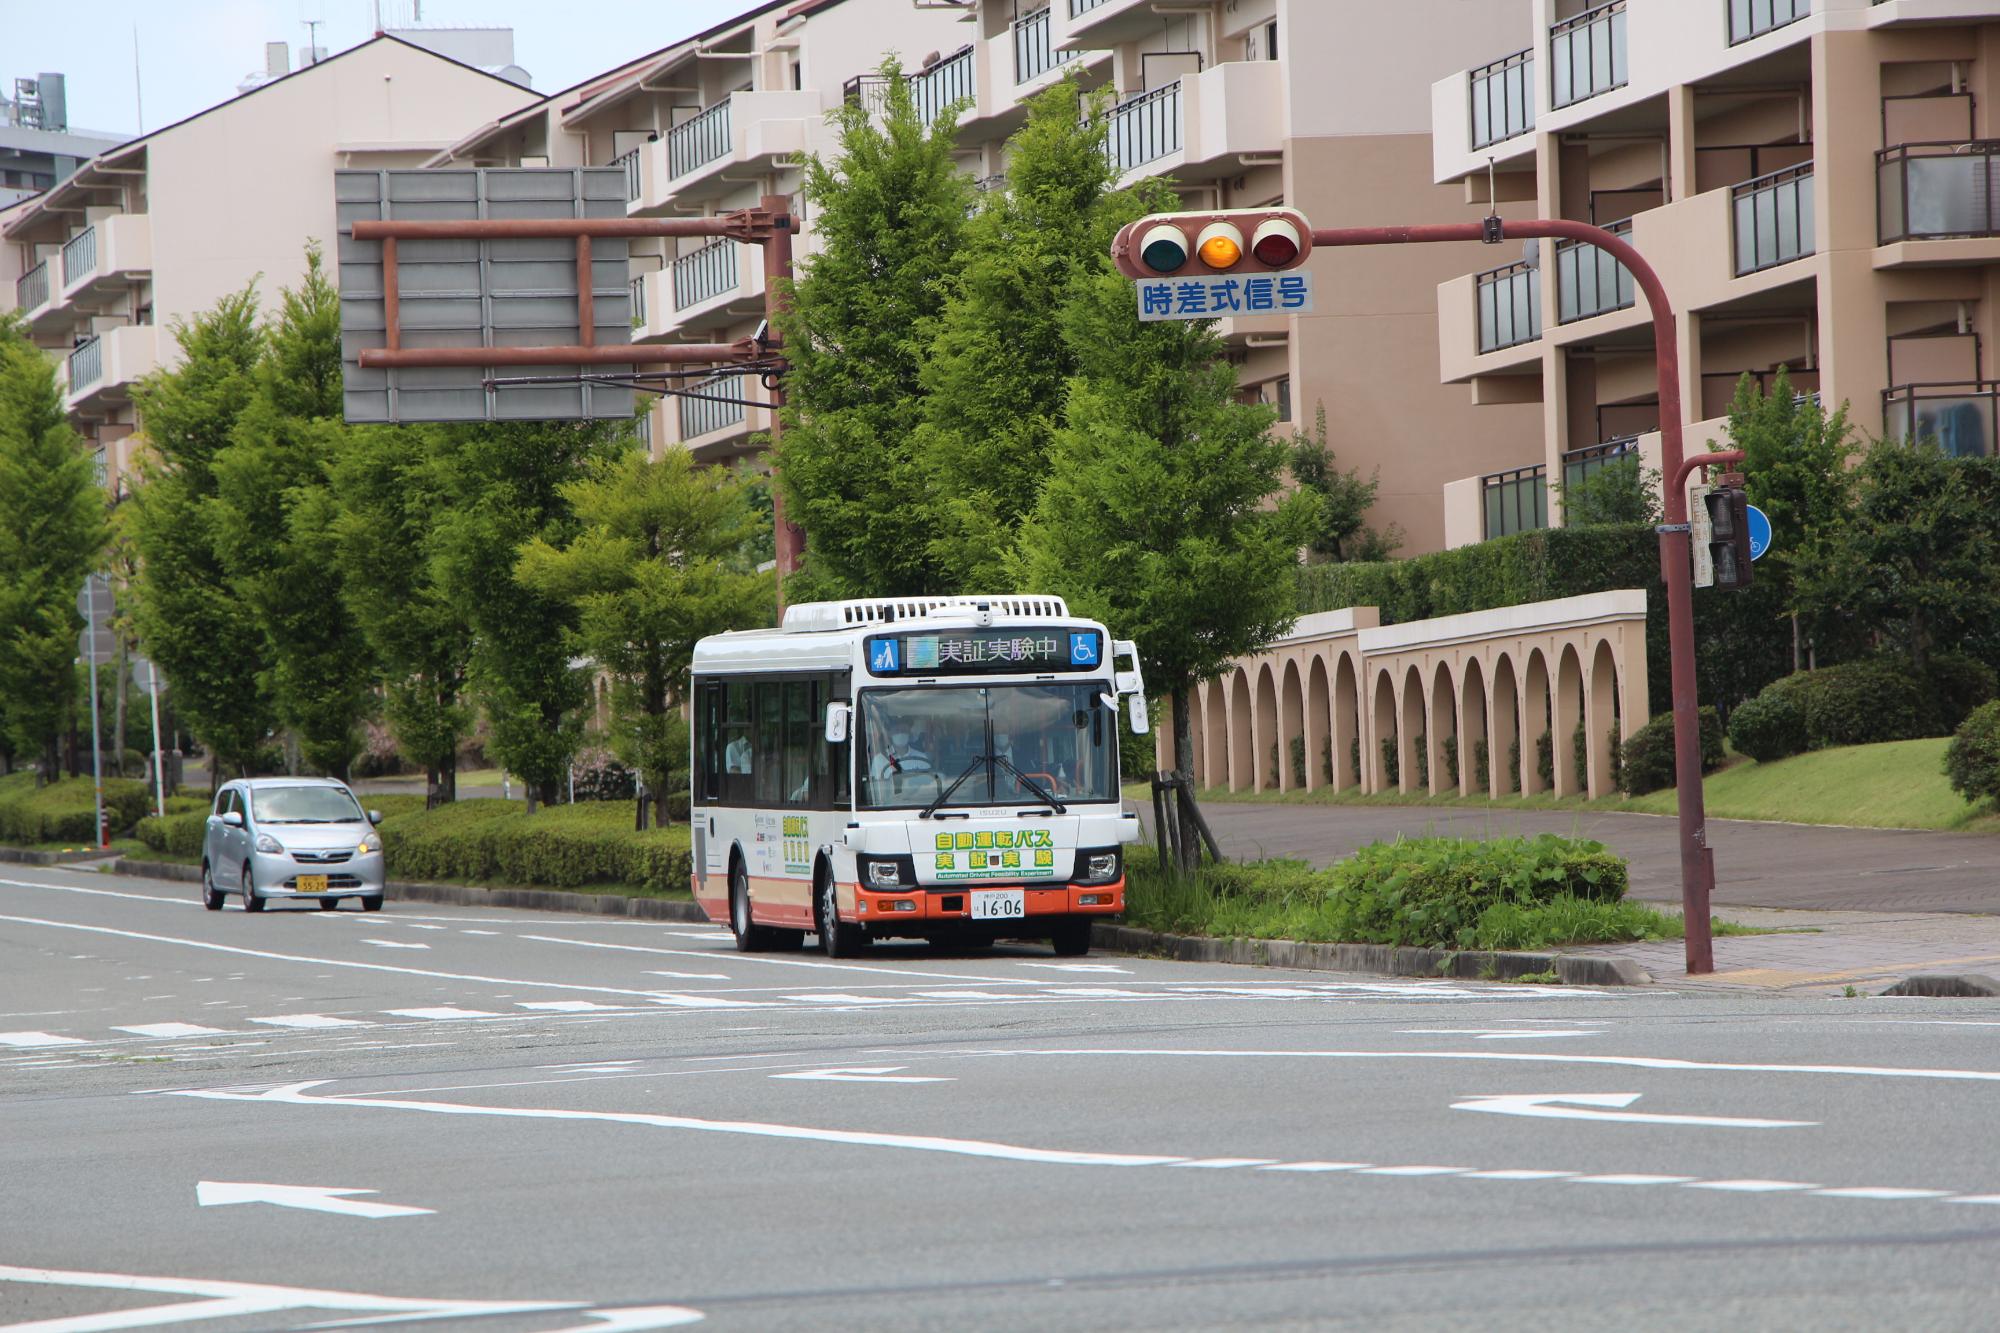 信号が黄色に変わった際に、しっかりとバスが停止する様子がわかる写真